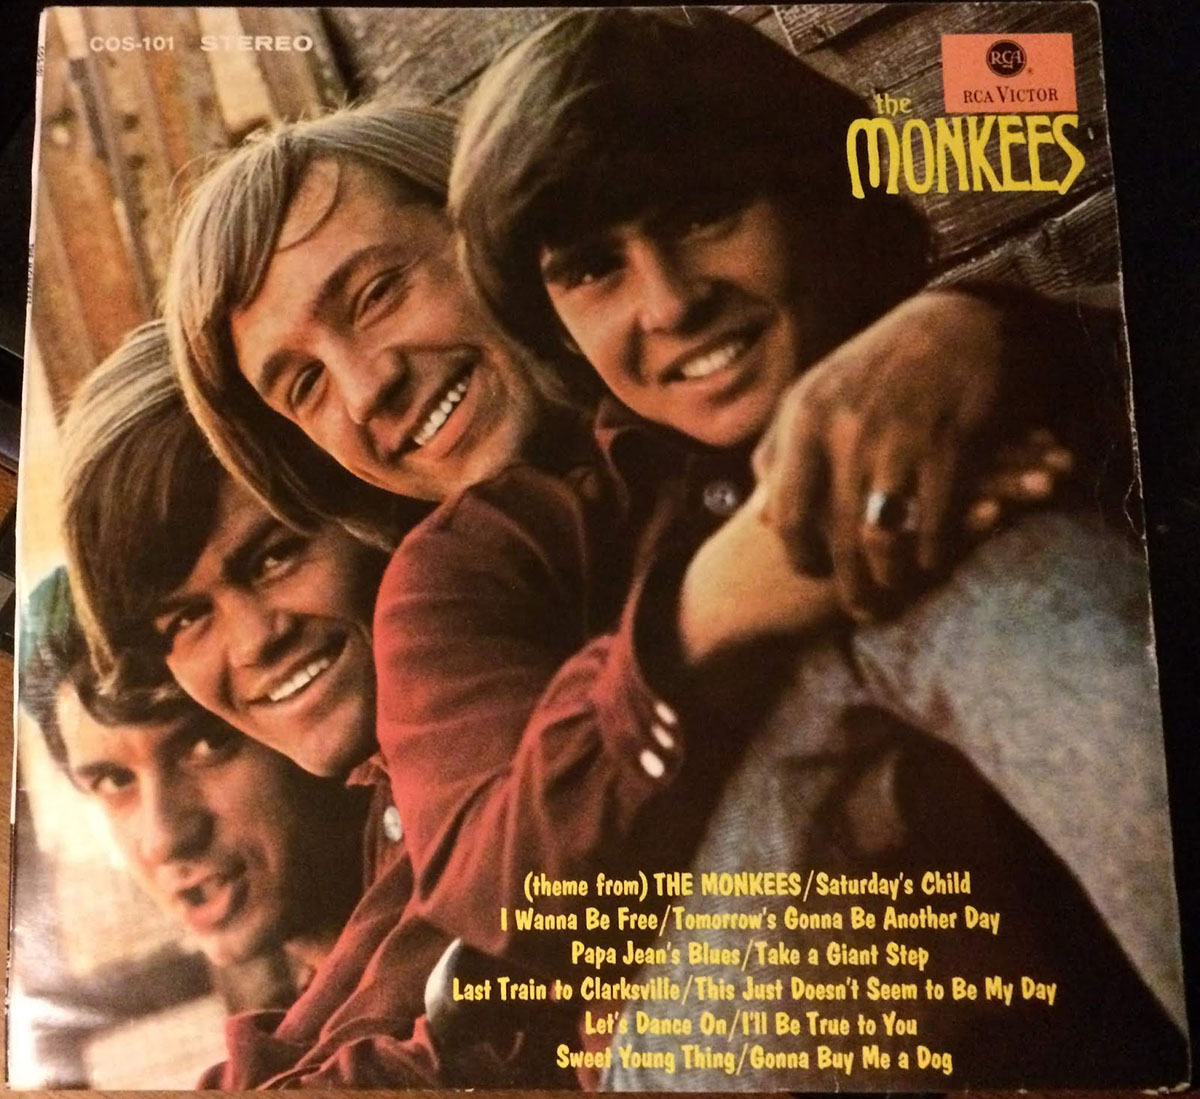 Albumcover des gleichnamigen Albums von The Monkees